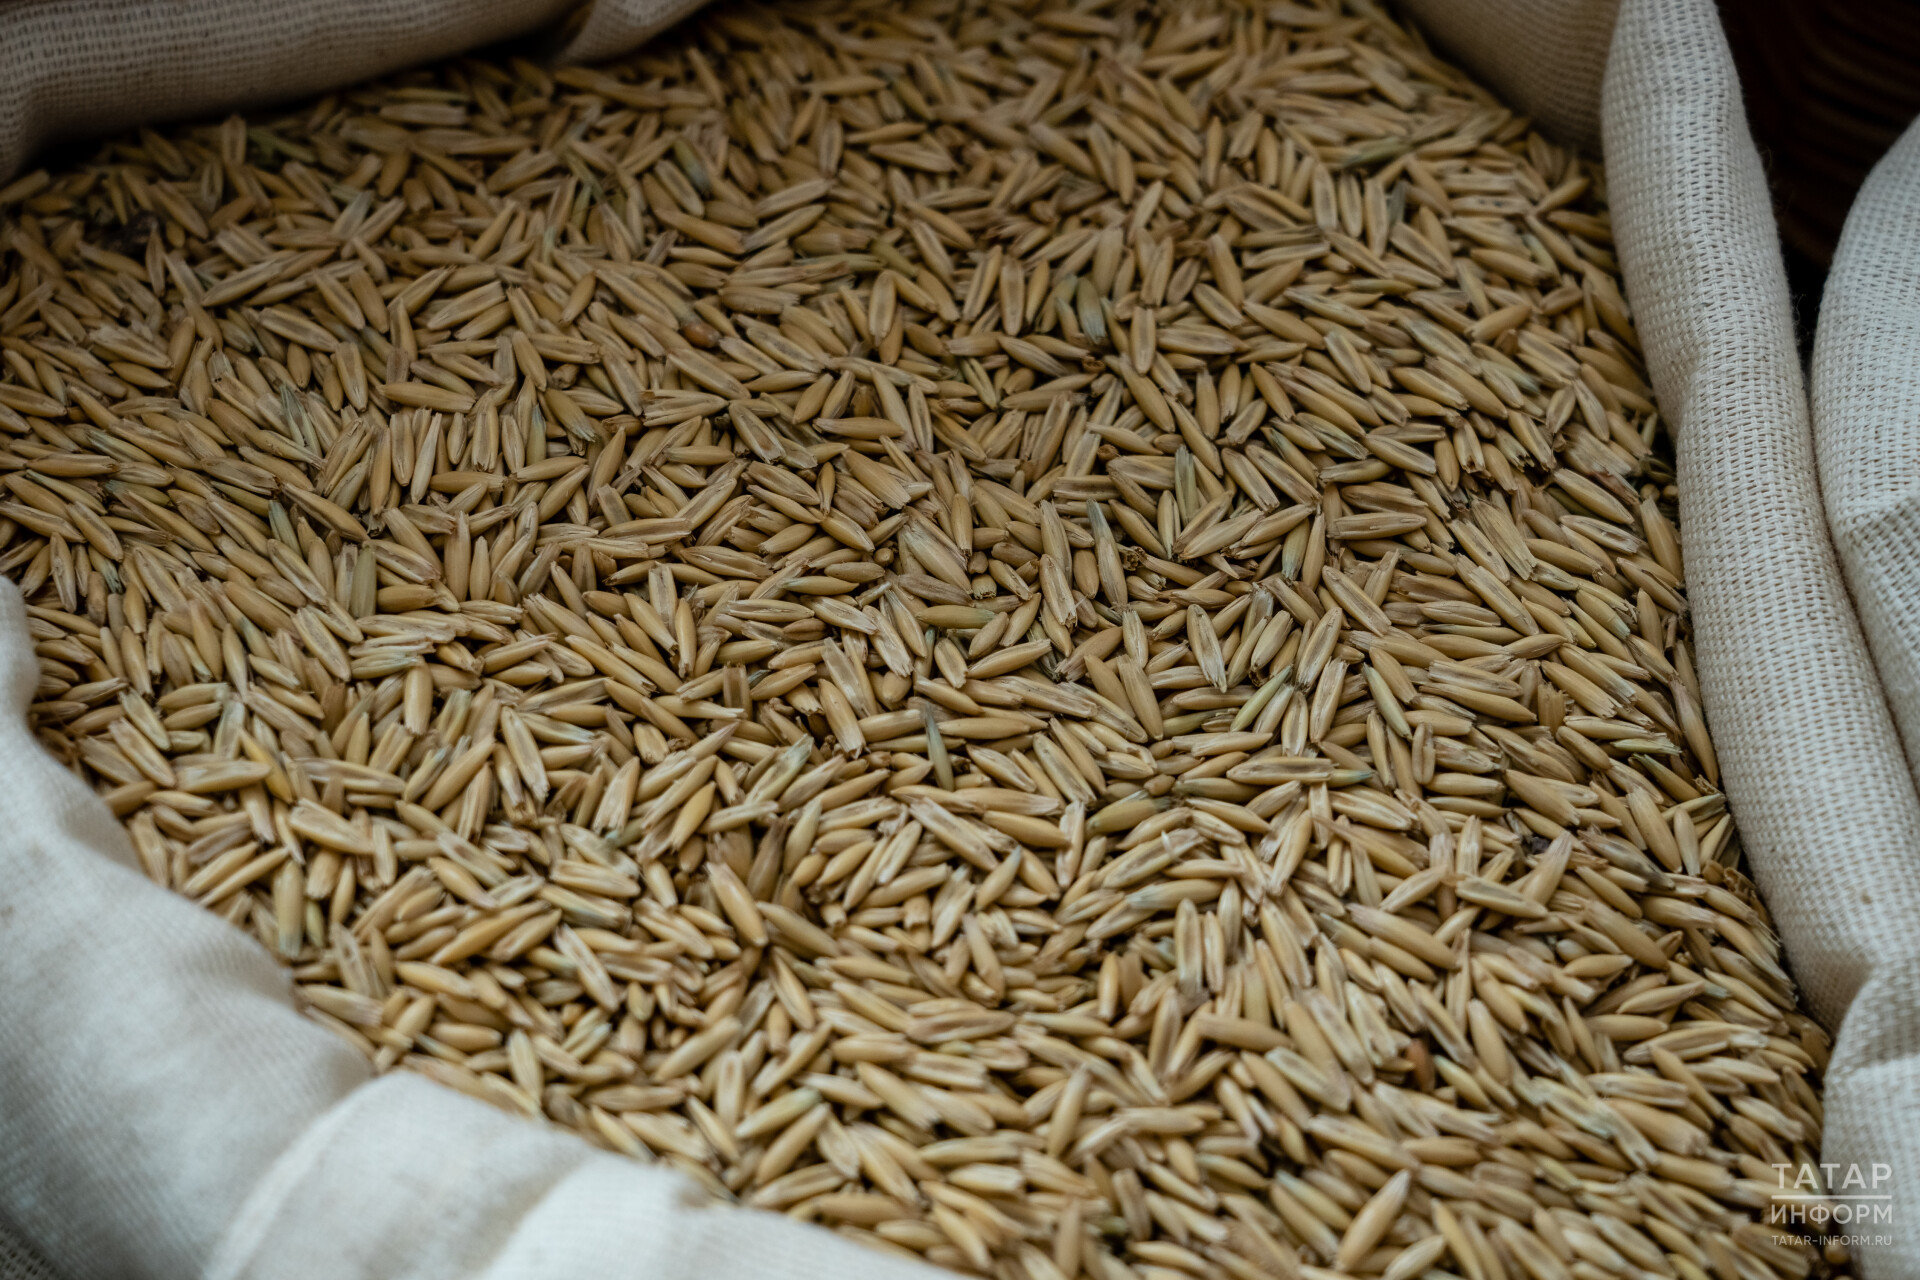 При проверке зерна на экспорт в Татарстане не выявили некачественной продукции